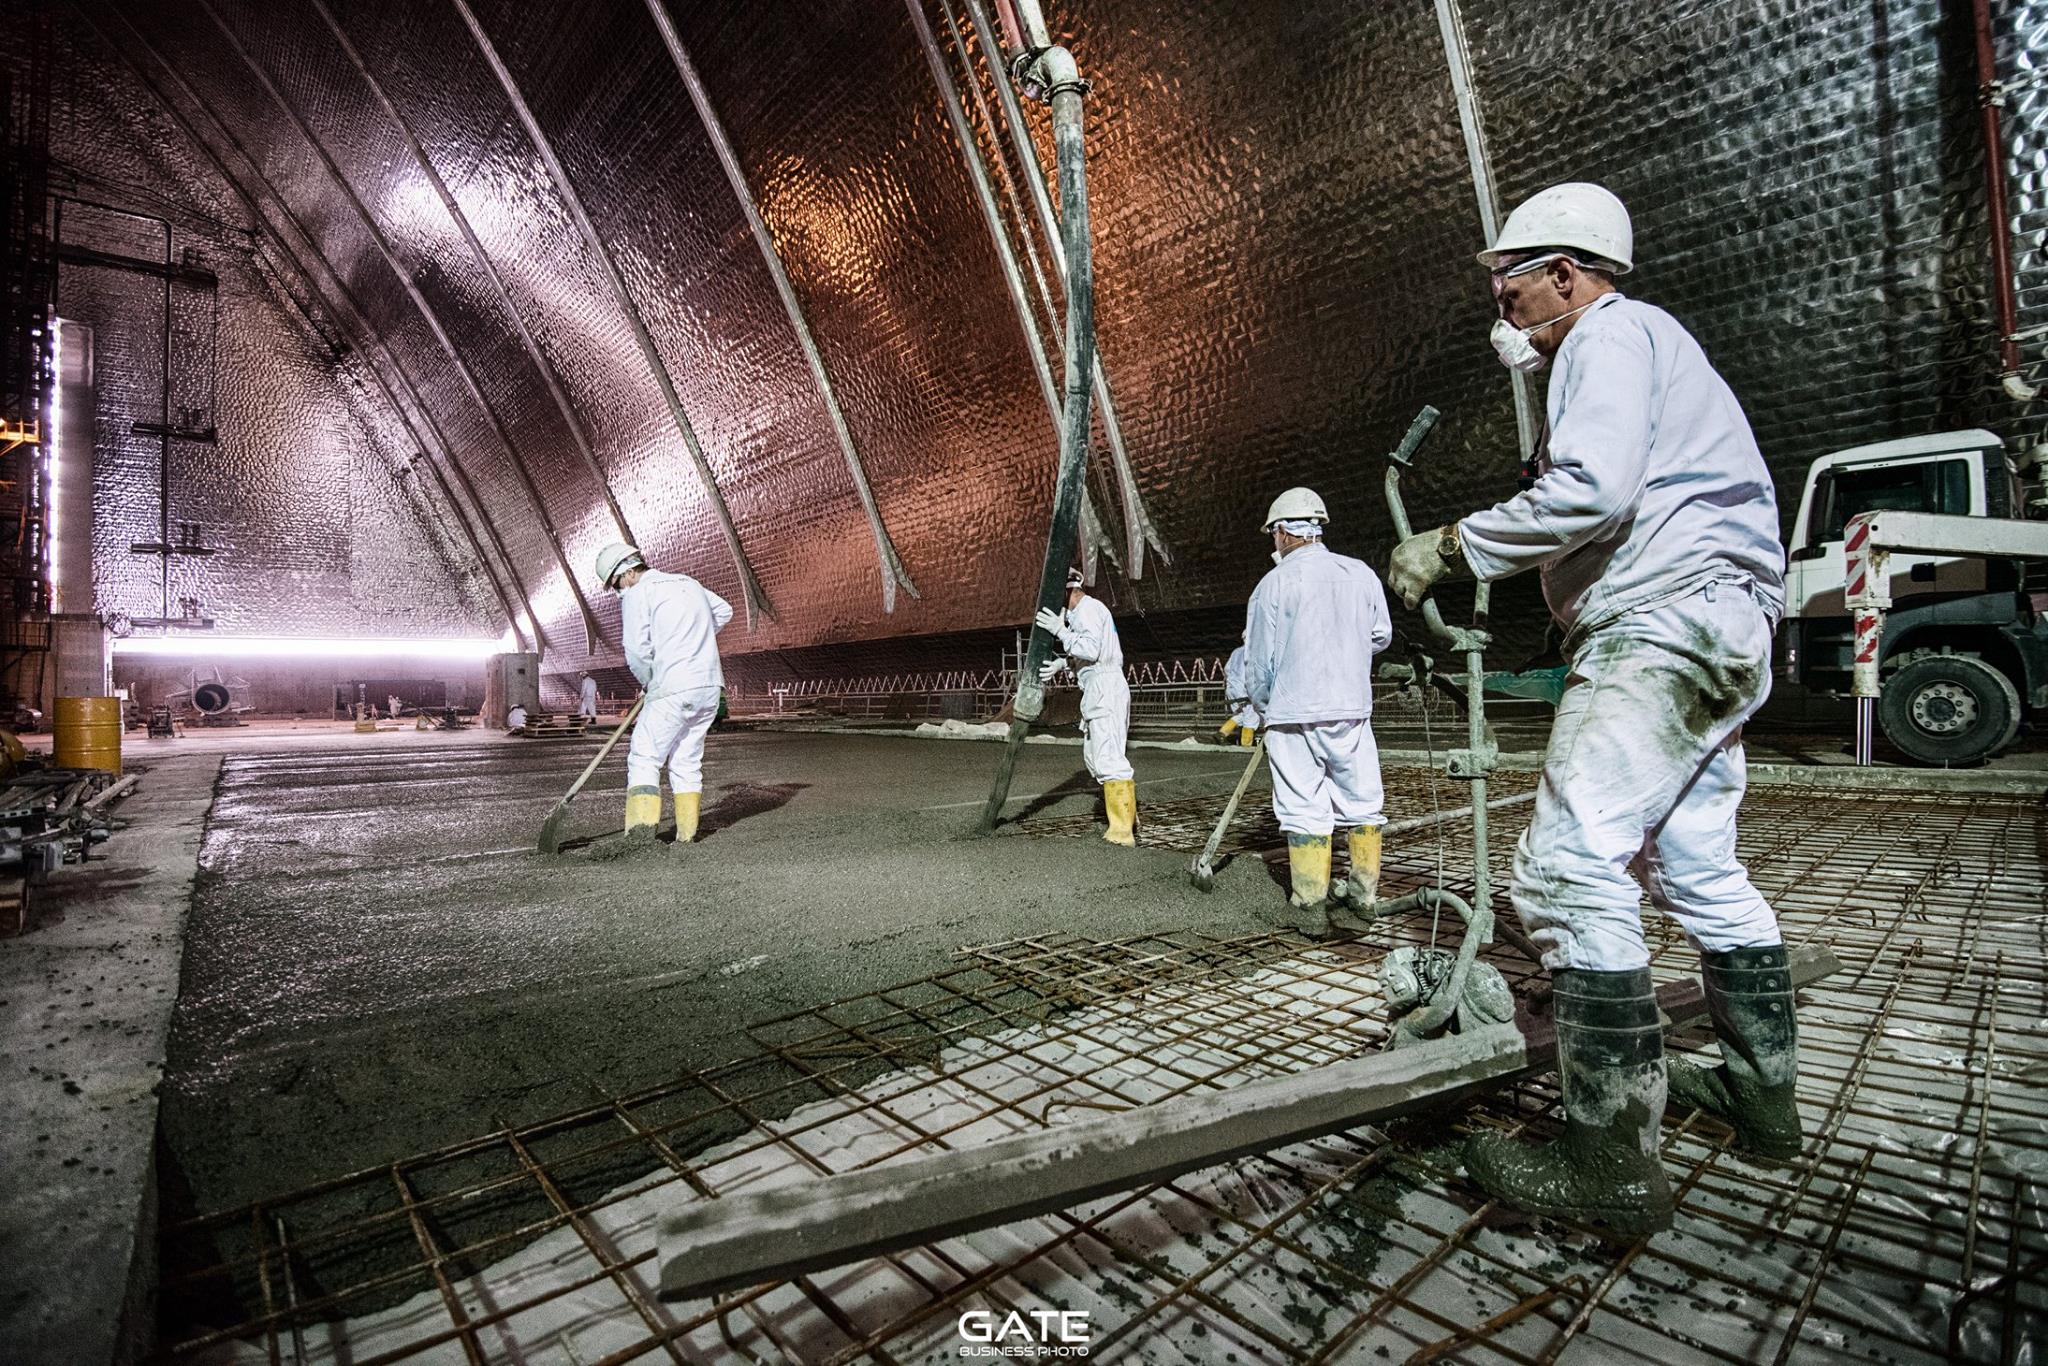 Радиация бетона. 4 Энергоблок ЧАЭС саркофаг. Крышка саркофага Чернобыльской АЭС. Внутри саркофага Чернобыльской АЭС 4 энергоблок. Реактор 4 энергоблока ЧАЭС.